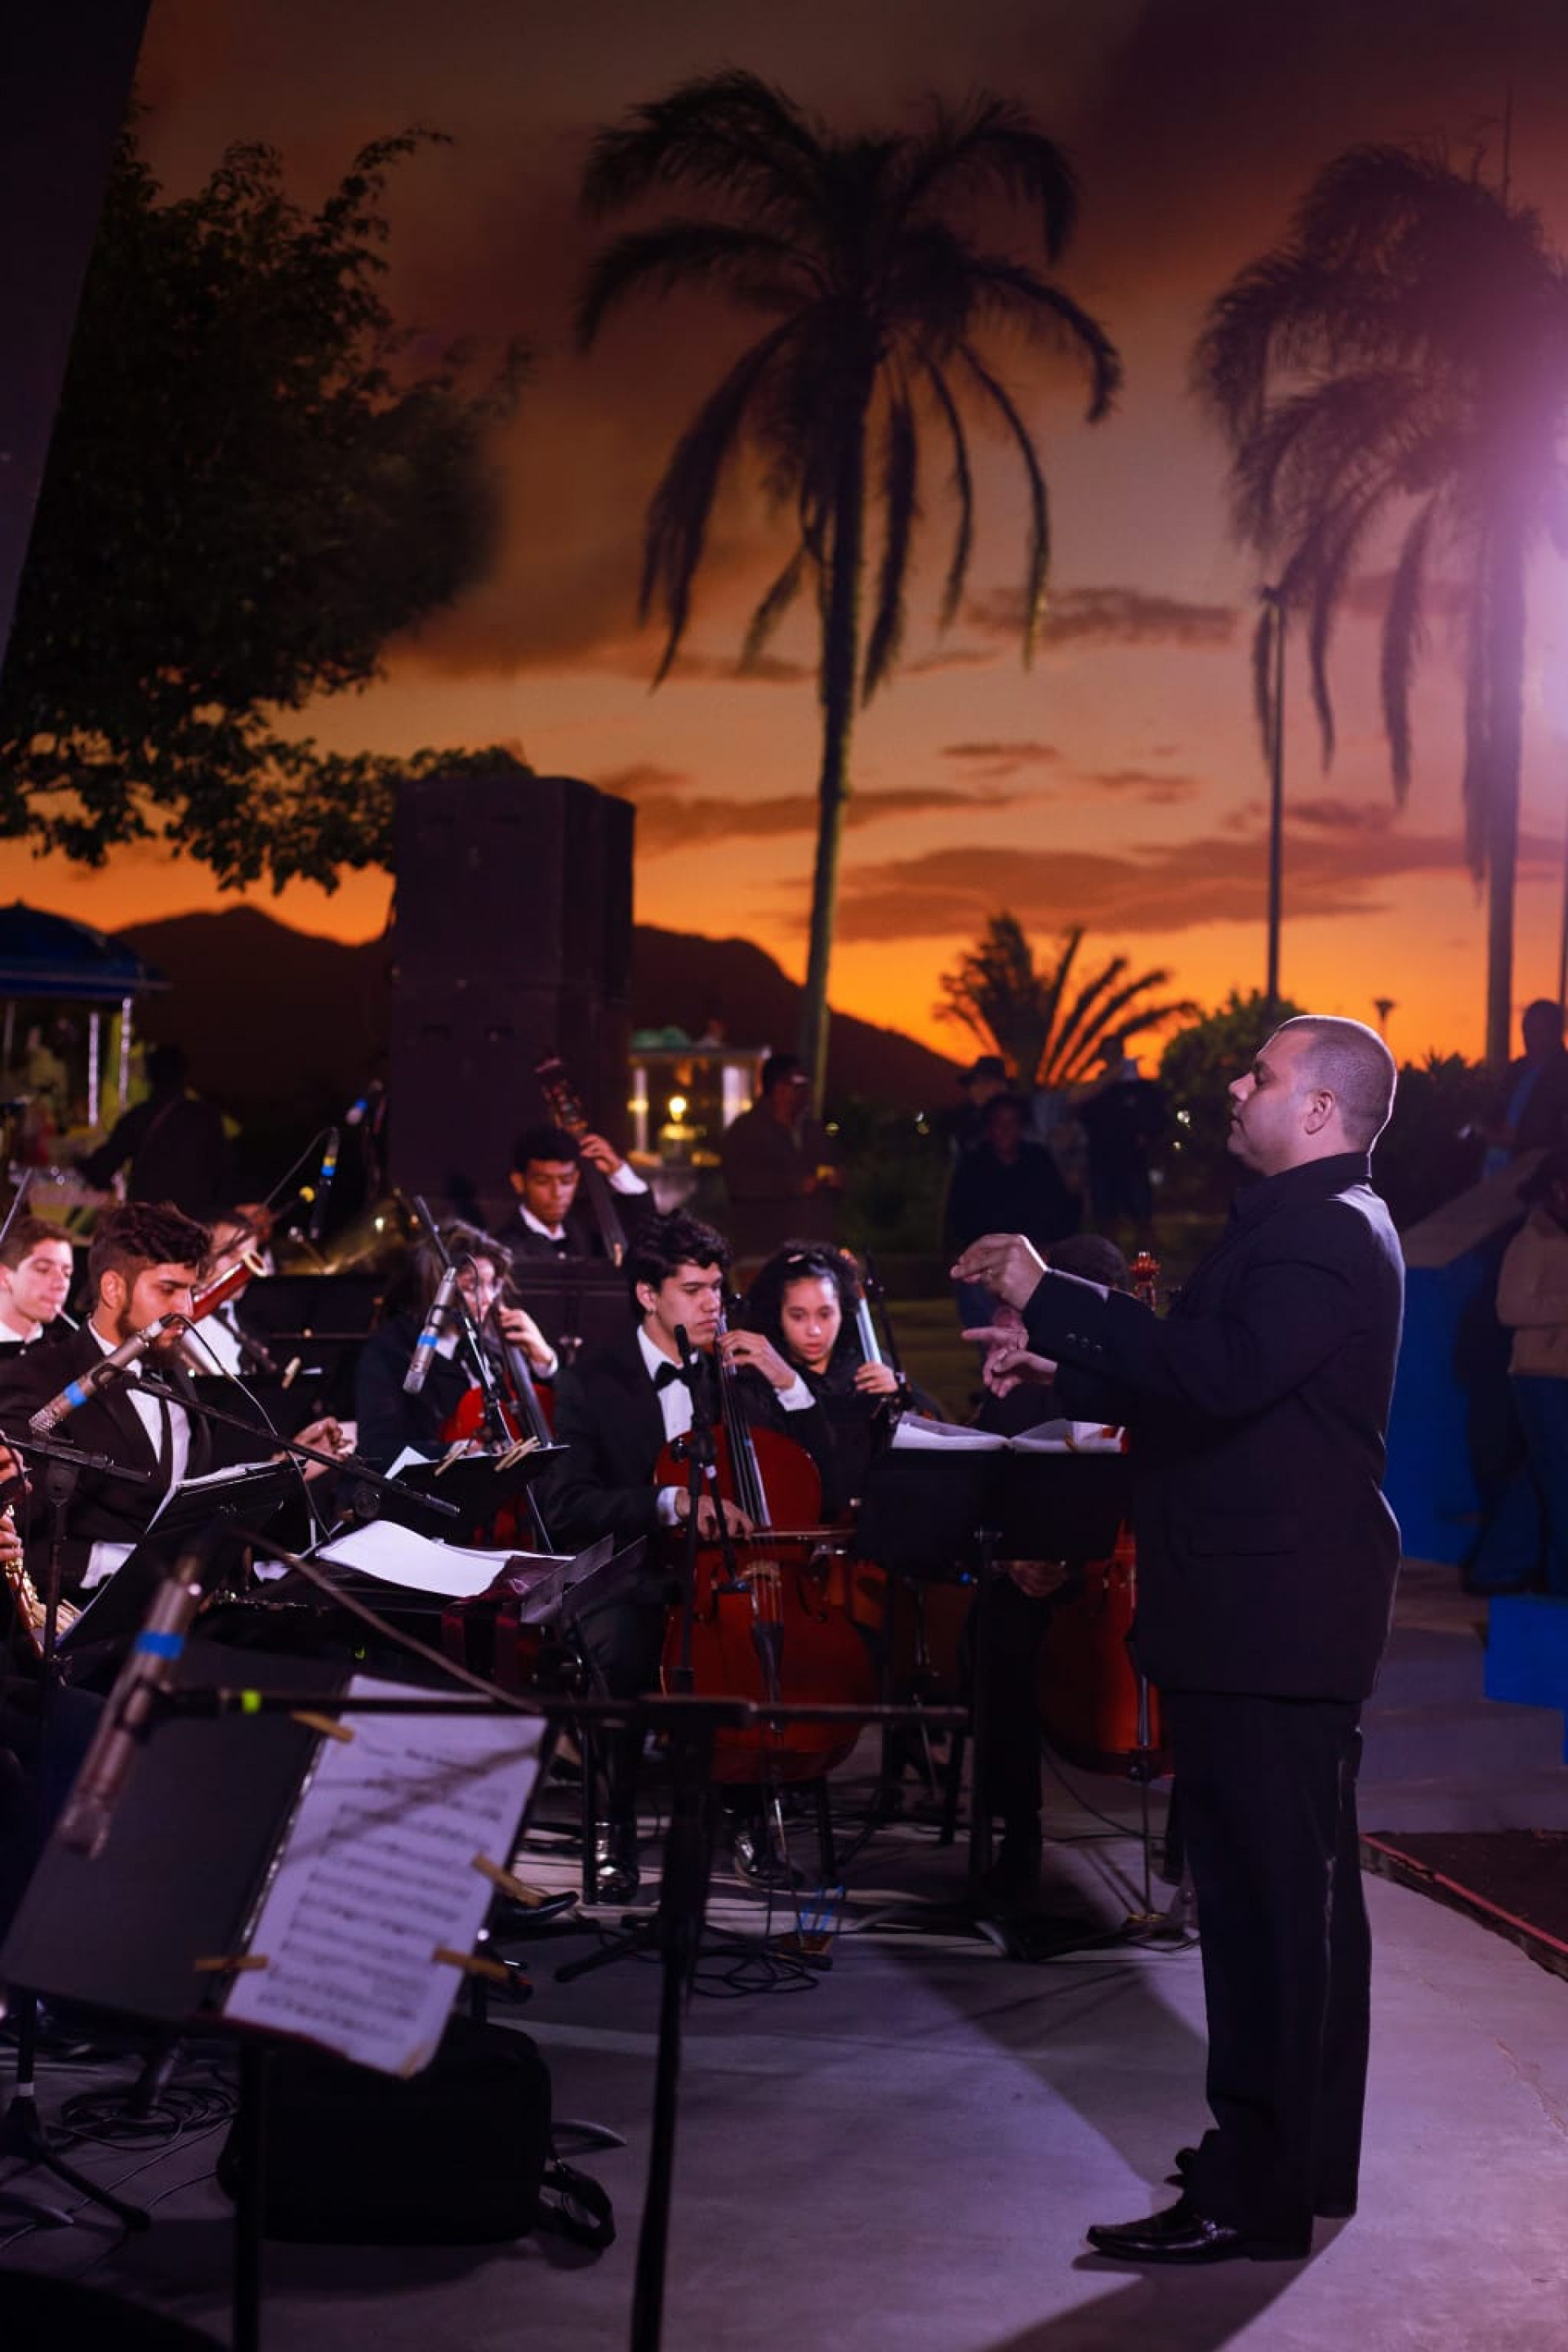 Concerto comemorativo dos 150 anos da Sociedade Musical Nova Aurora será em 7 de junho (quarta-feira), às 20h, na Praia da Imbetiba - Divulgação